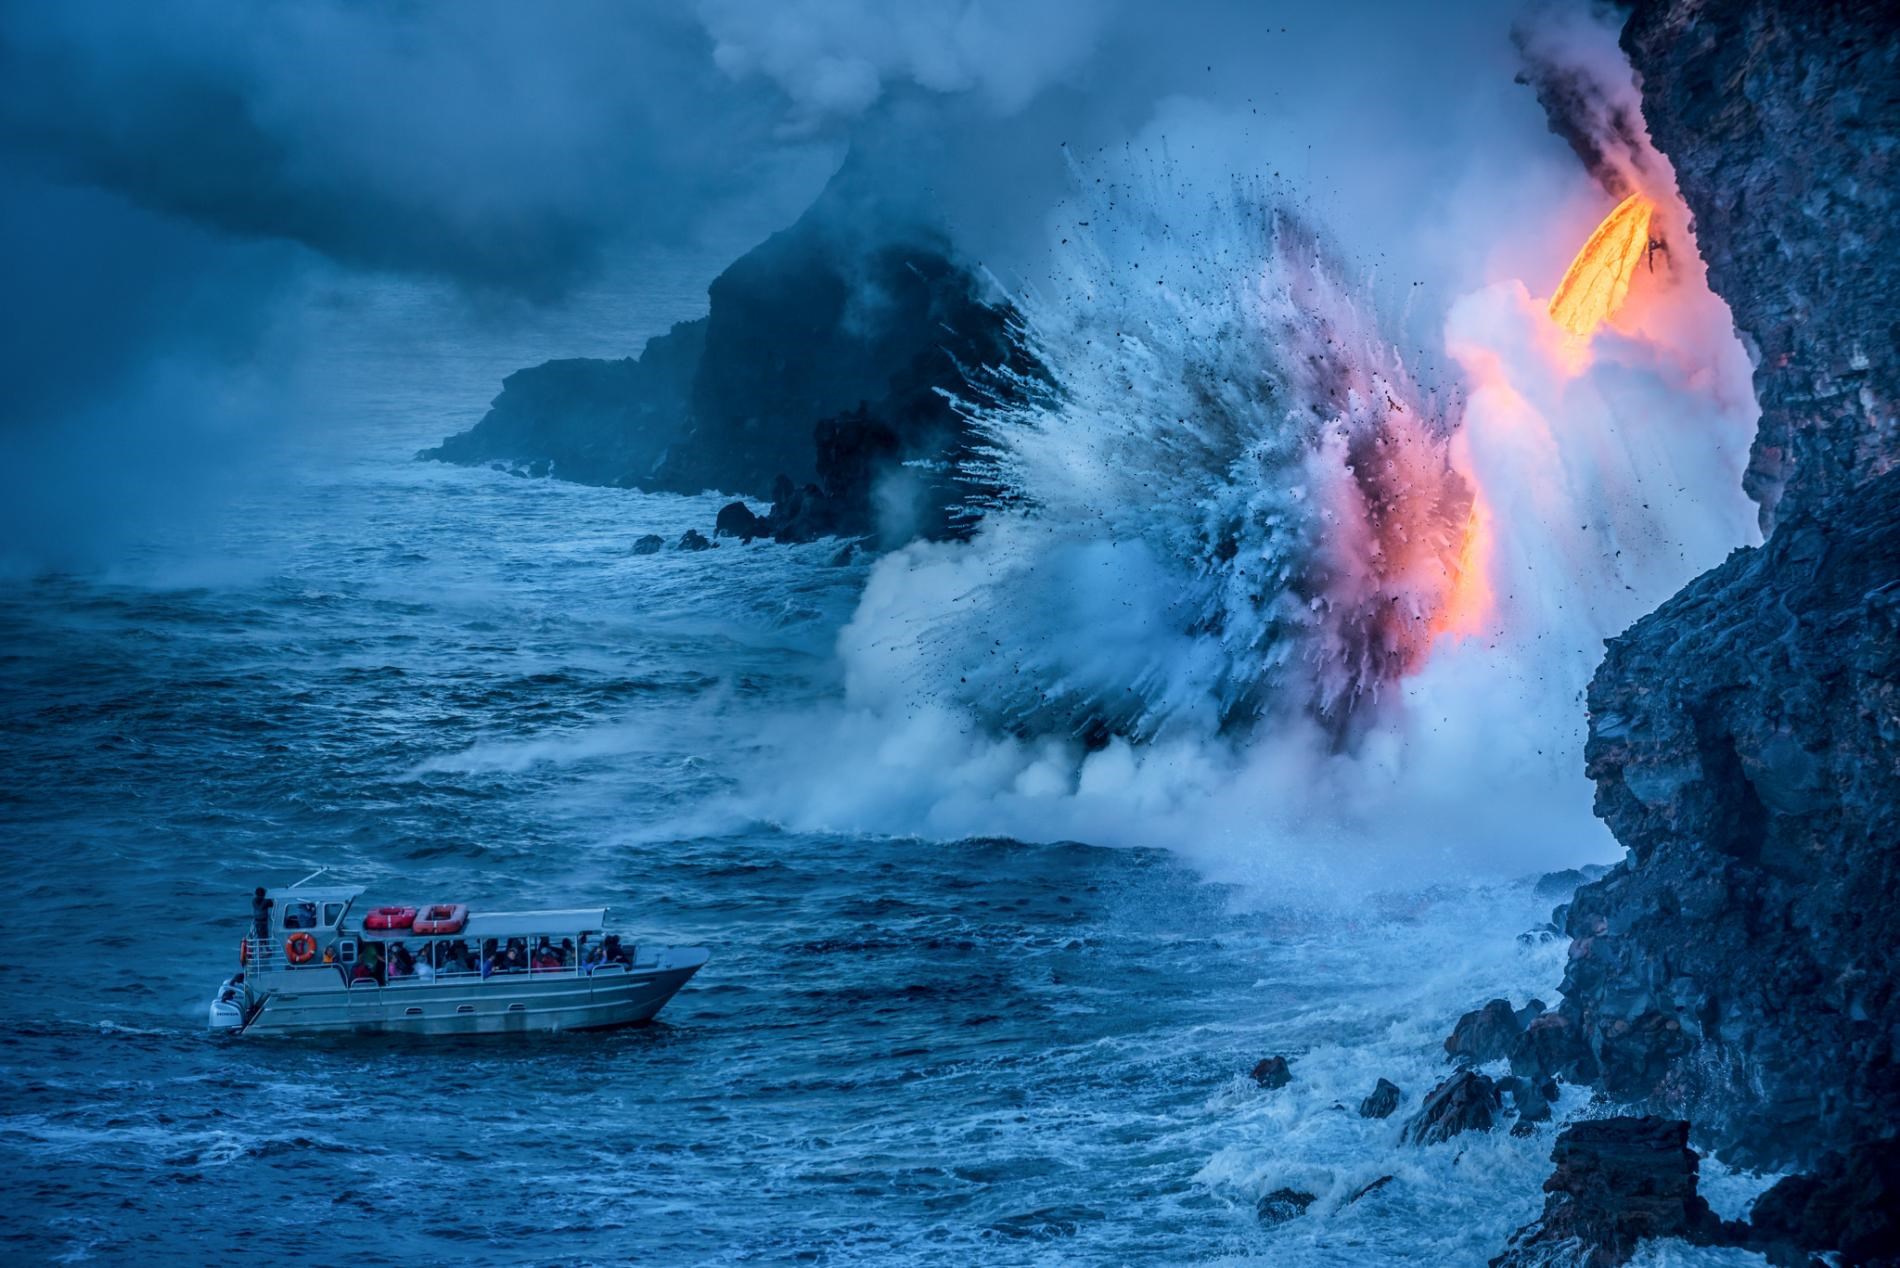 “Dünya’nın en büyük kalkan volkanı” unvanı el değiştirdi! Yeni şampiyon yine Hawaii’den